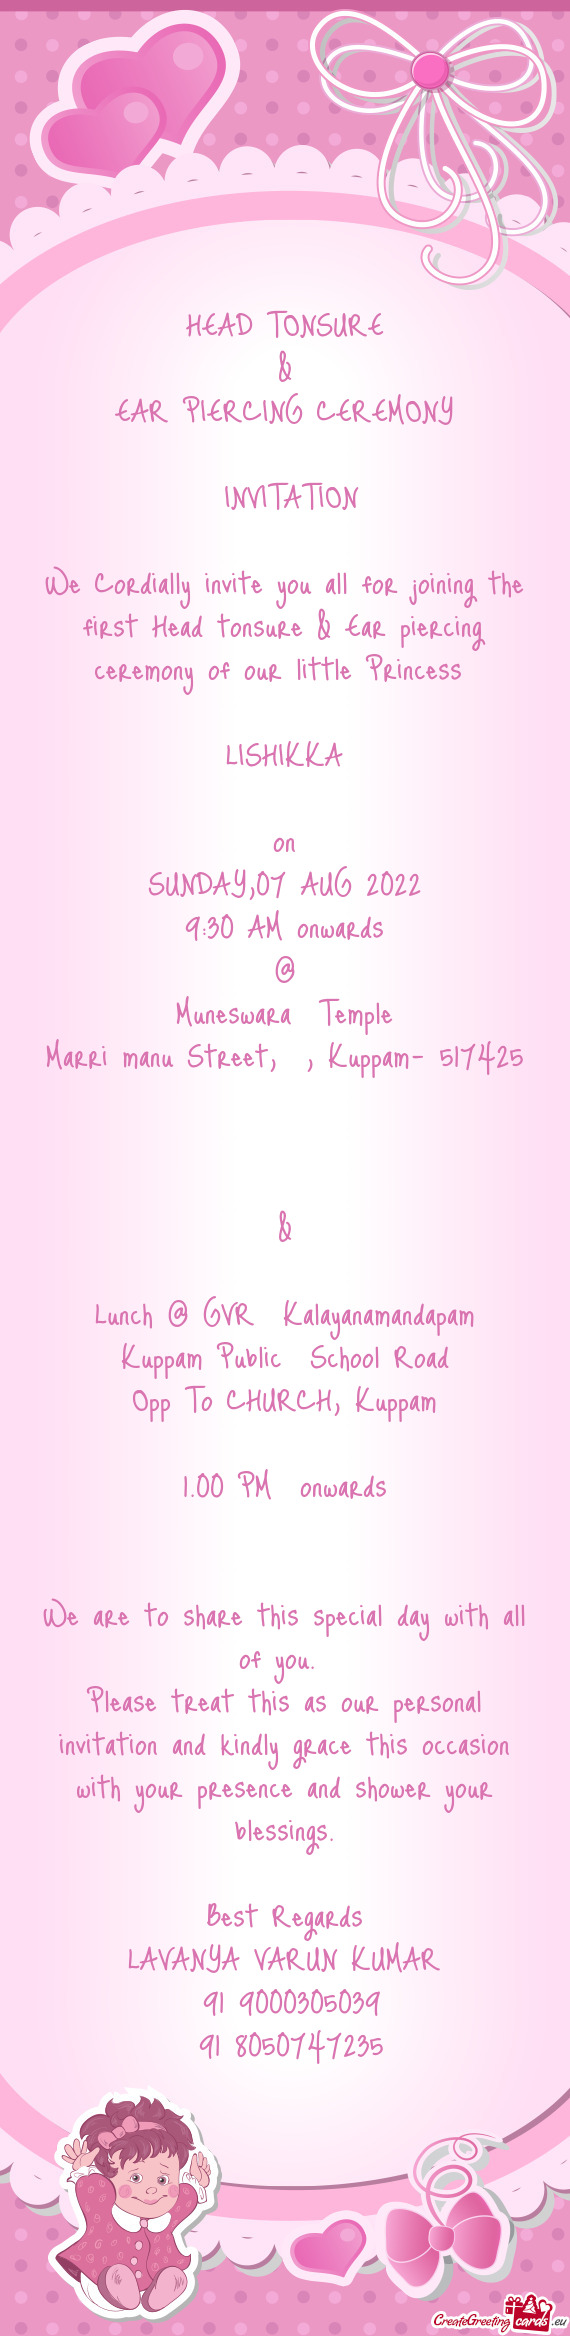 Opp To CHURCH, Kuppam